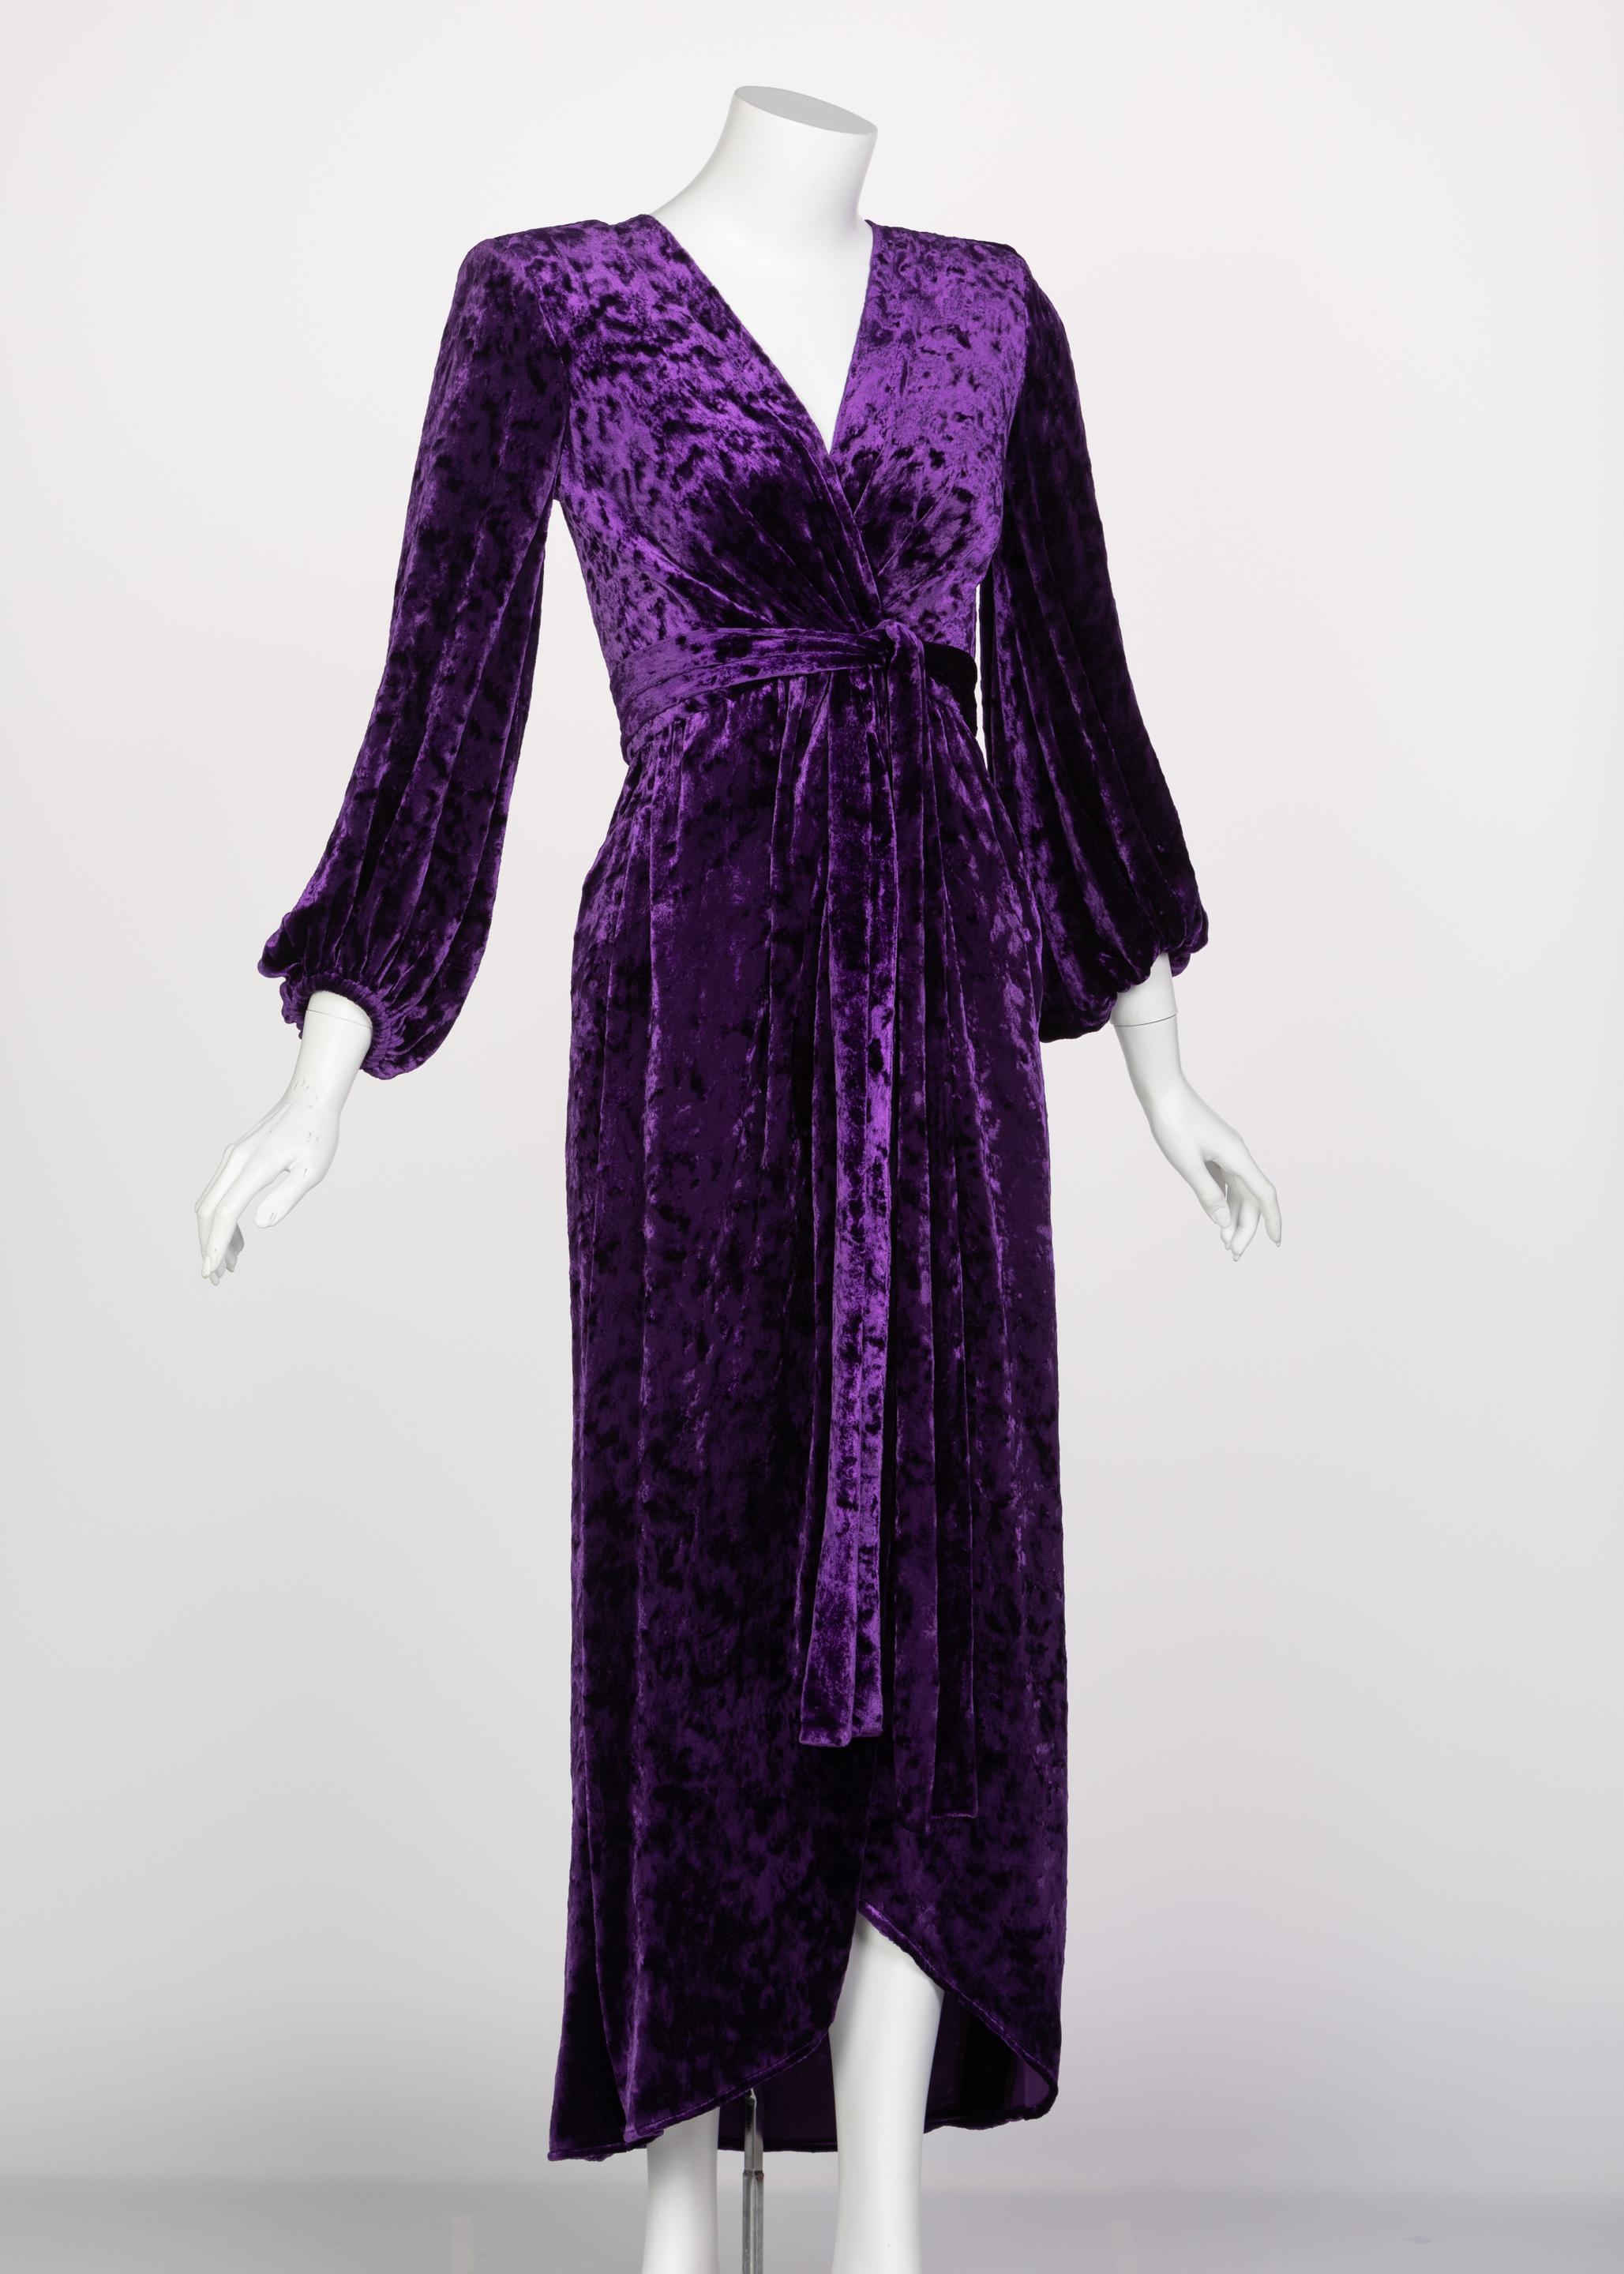 purple crushed velvet dress